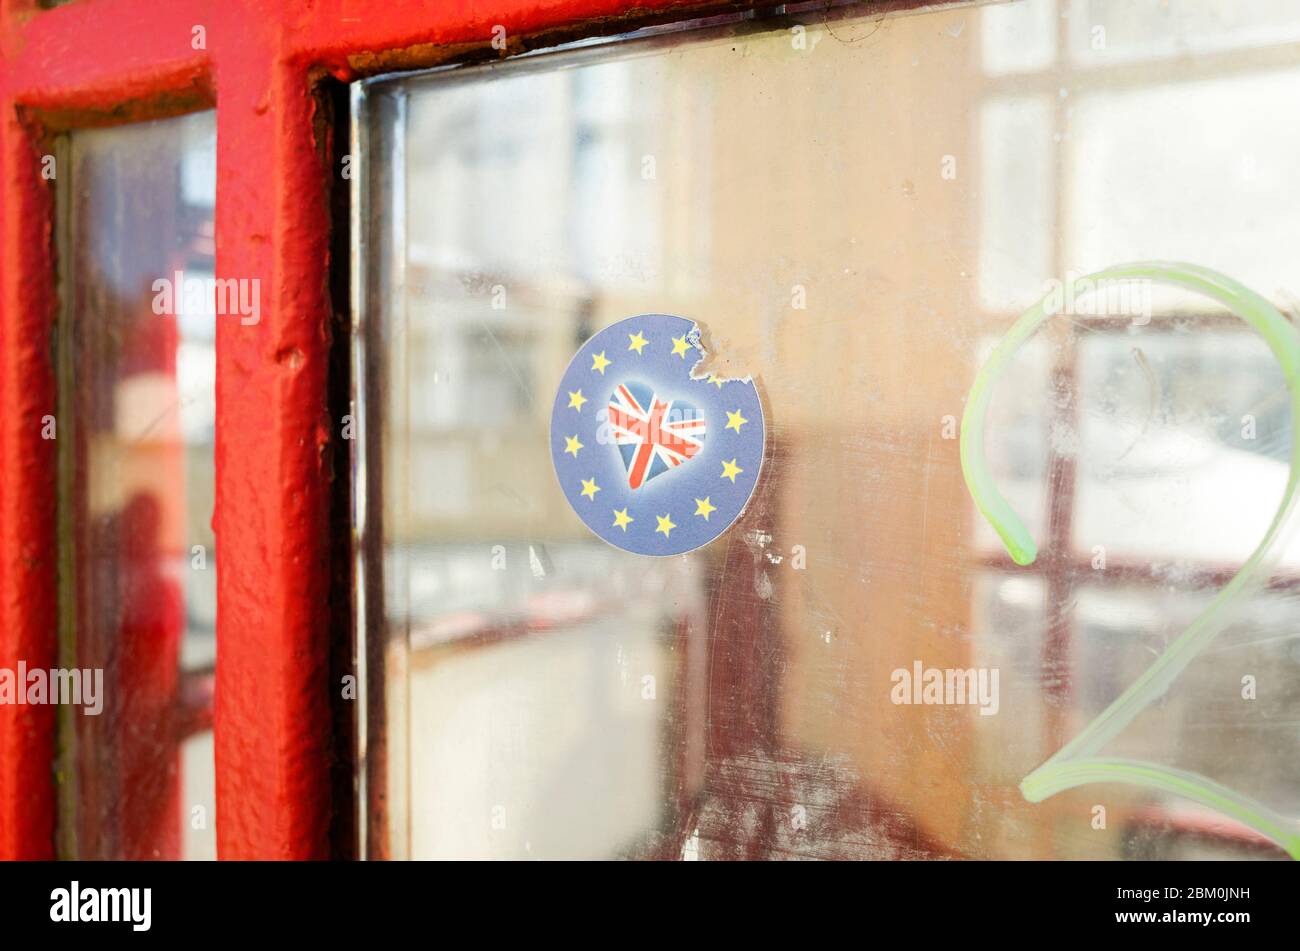 Scatola telefonica rossa con adesivo Brexit attaccato al vetro, Whitstable Kent England Regno Unito Foto Stock